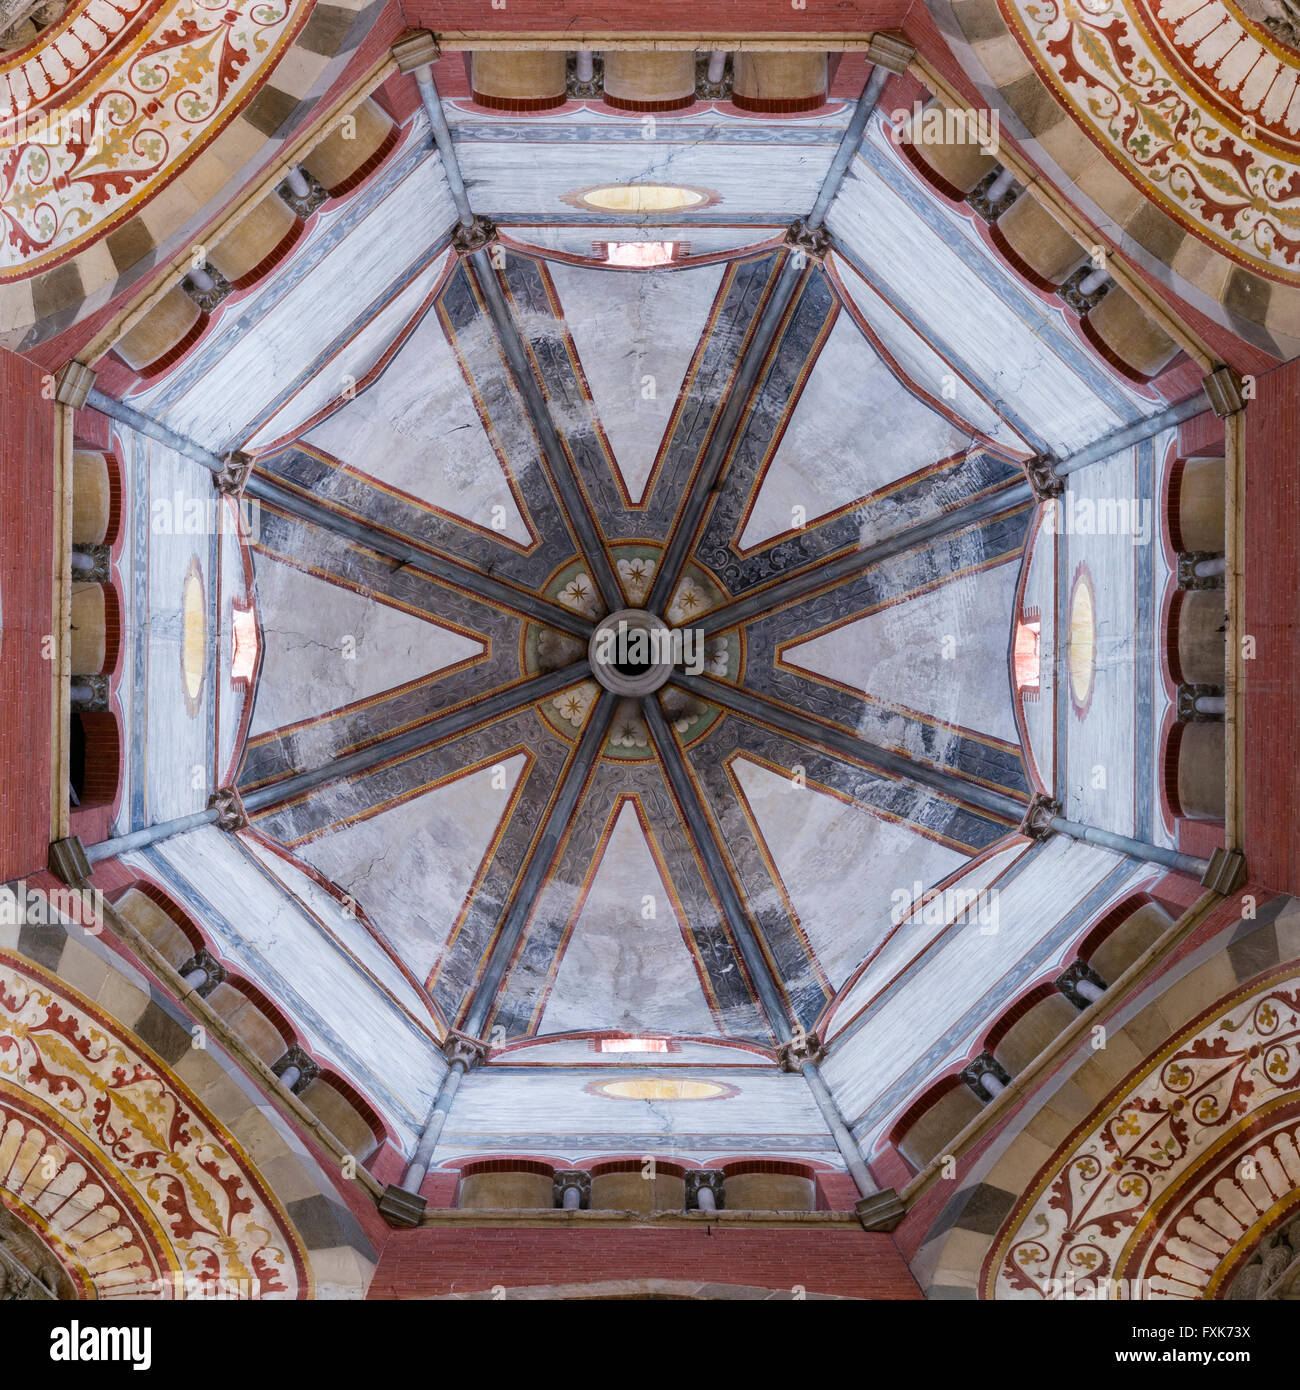 Incrocio con tholobate e cupola, St. Andrew's Basilica, Basilica di Sant'Andrea, architettura gotica, Vercelli Piemonte, Italia Foto Stock